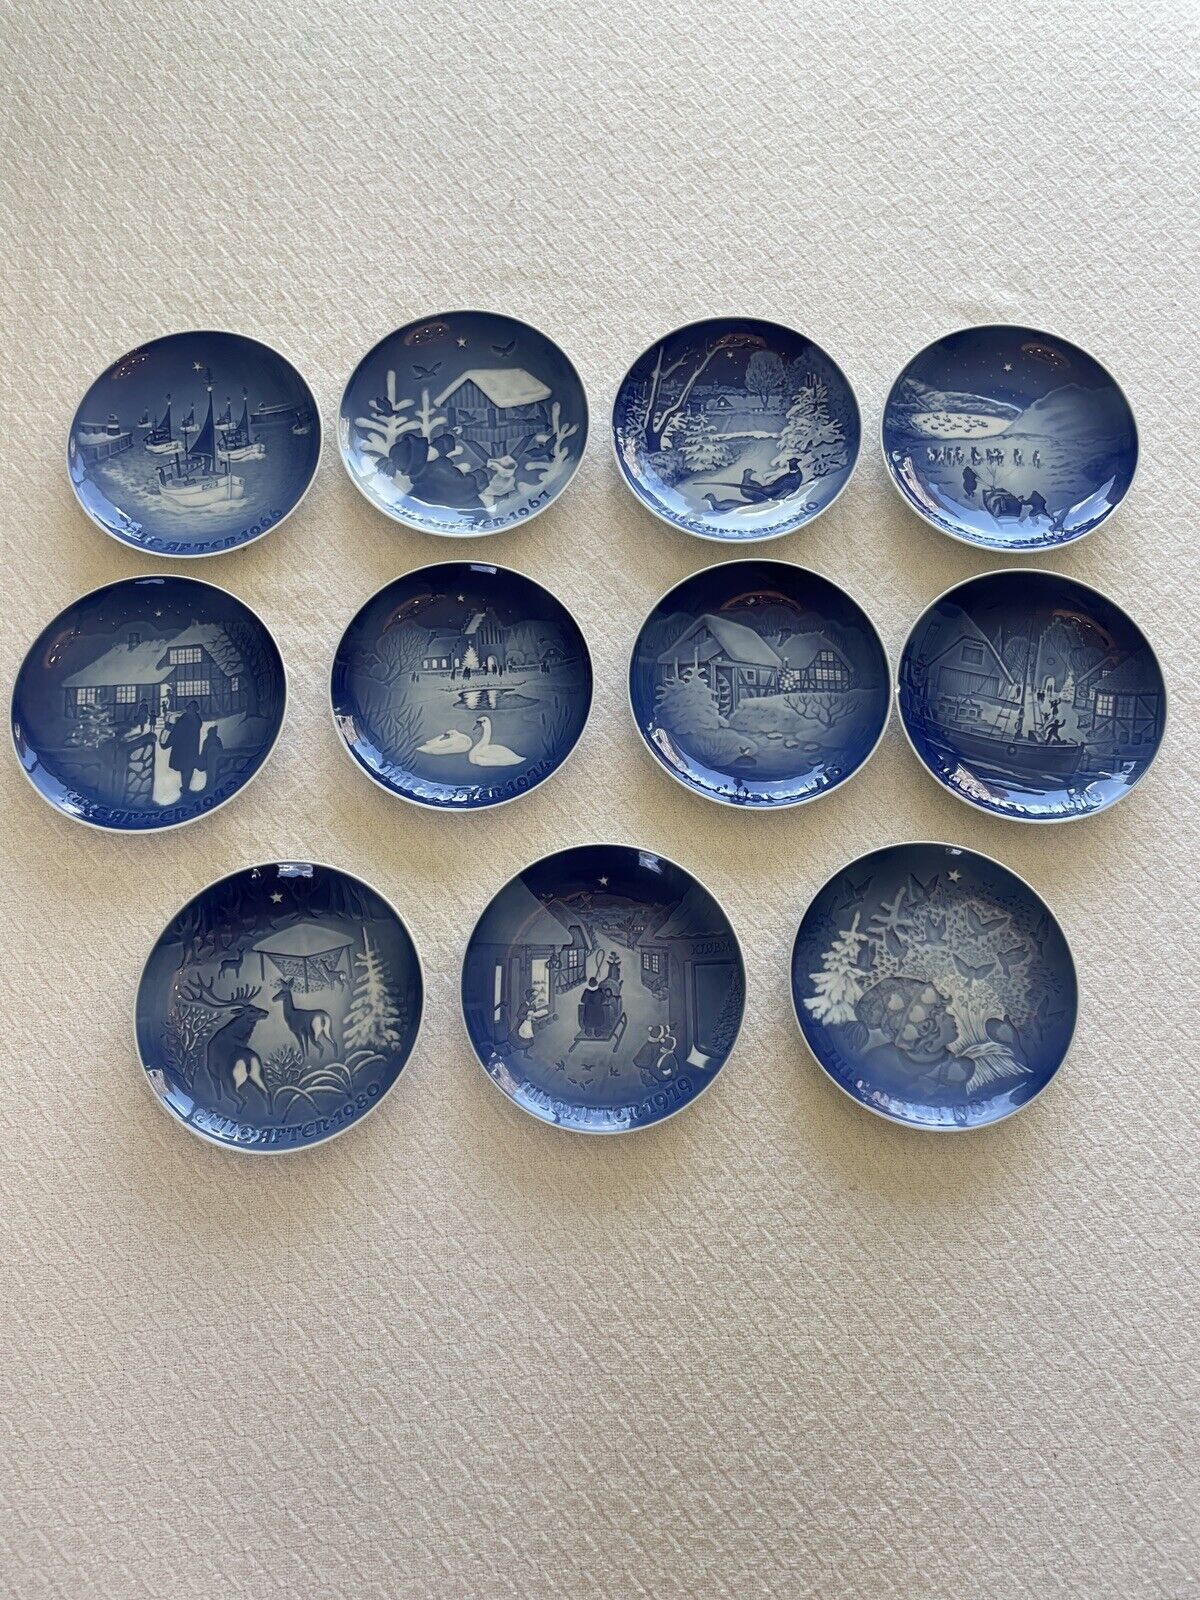 Vintage Bing & Grondahl Copenhagen Porcelain Plates “Jule After” Set Of 11